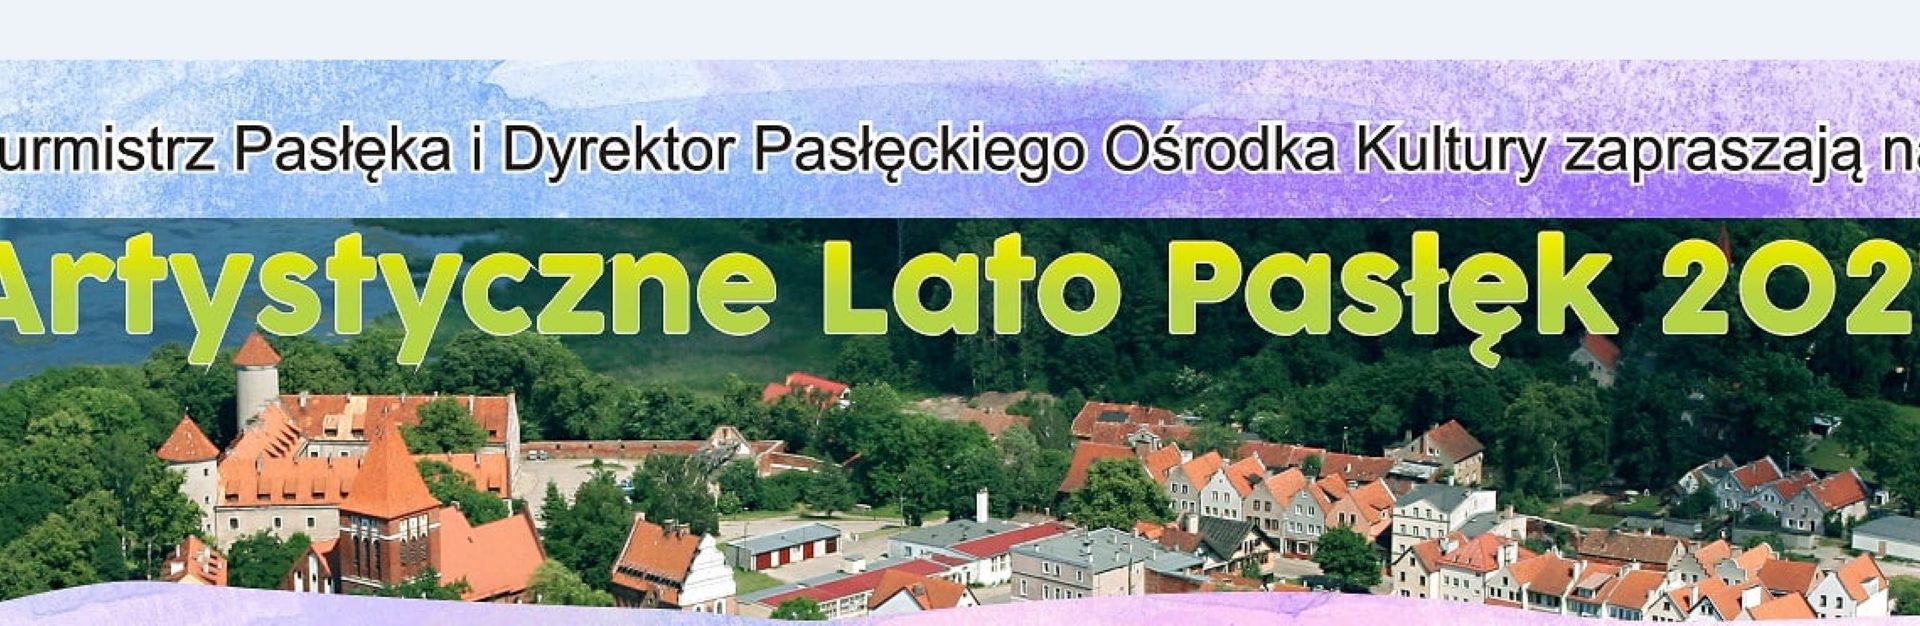 Plakat graficzny zapraszający do Pasłęka na Artystyczne Lato Pasłęk 2021. Na zdjęciu panorama miasta.  